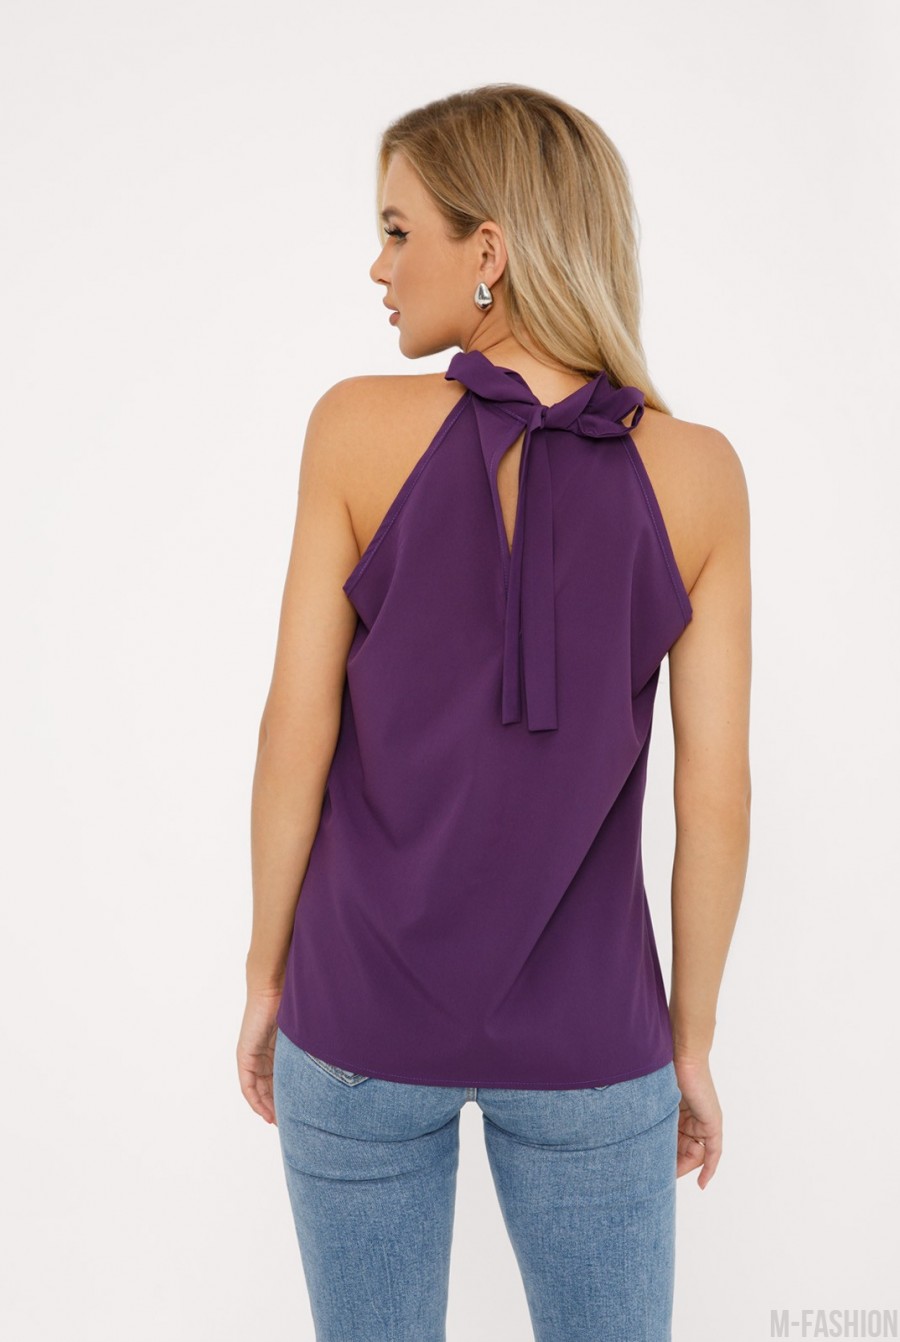 Фиолетовая блуза-халтер с бантом на спинке- Фото 3